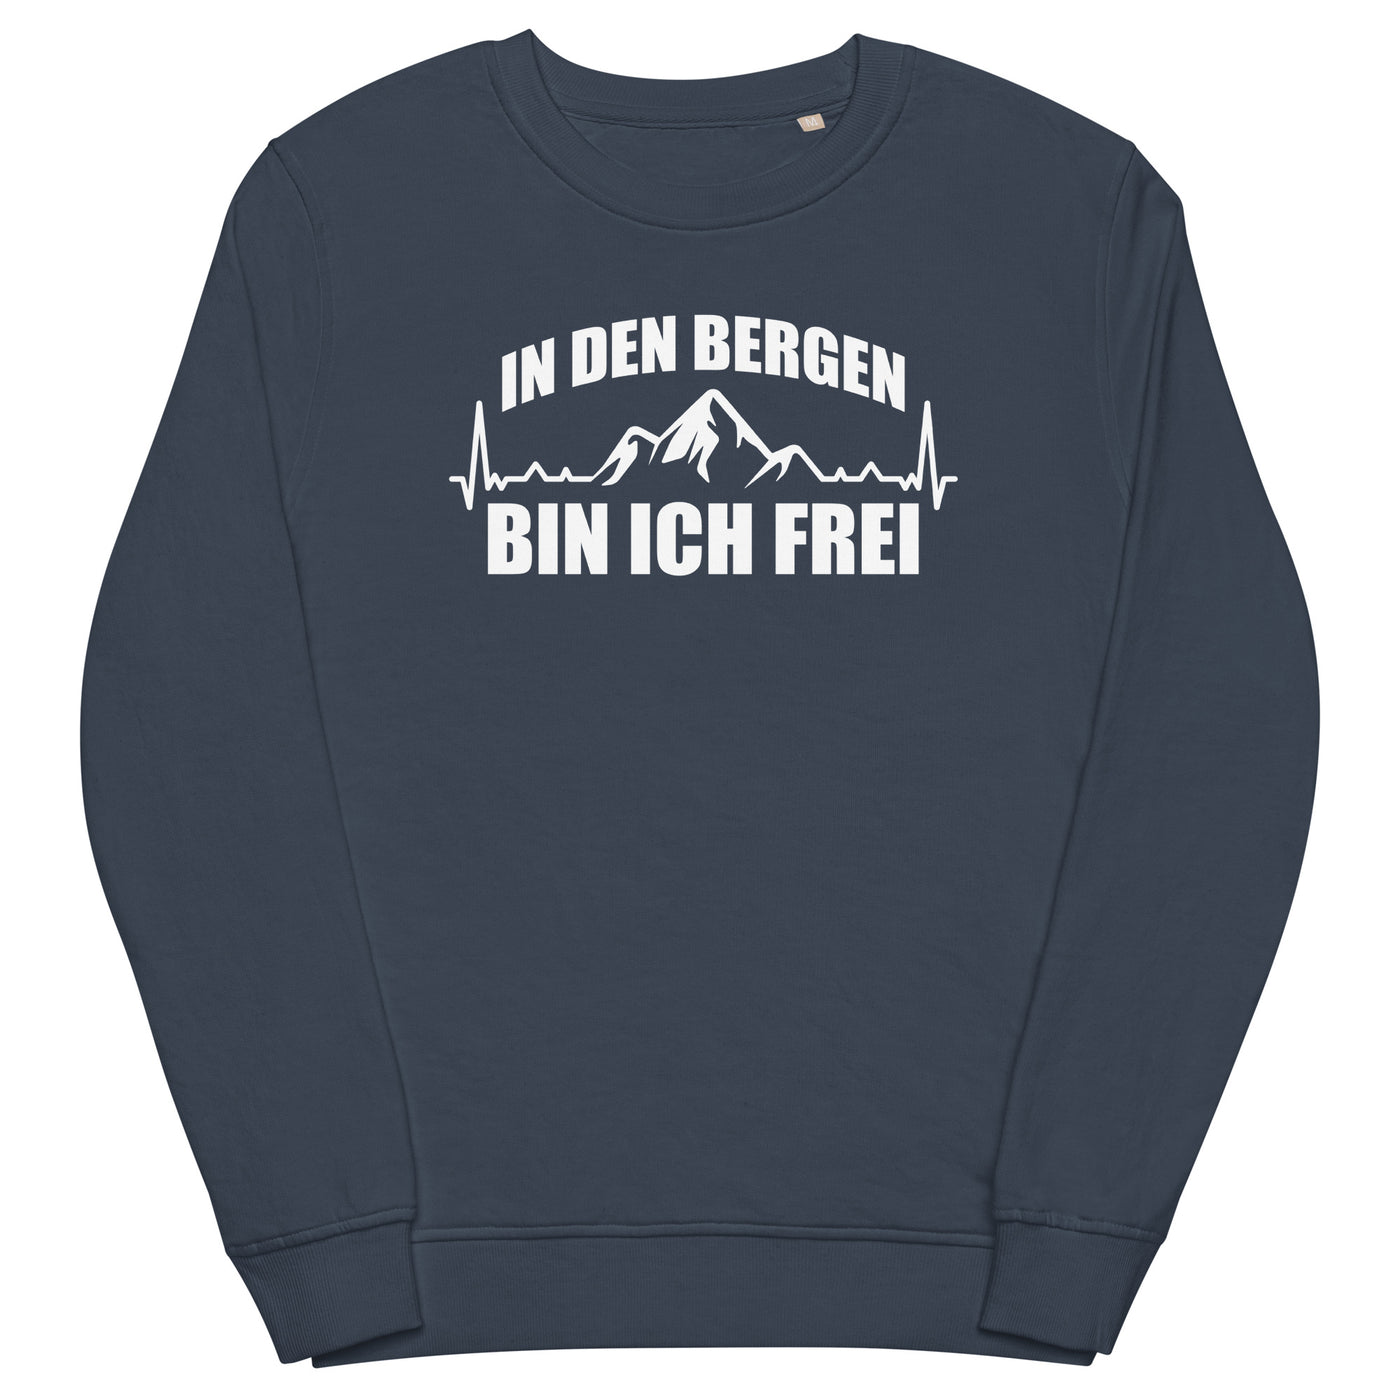 In Den Bergen Bin Ich Frei 1 - Unisex Premium Organic Sweatshirt berge xxx yyy zzz French Navy